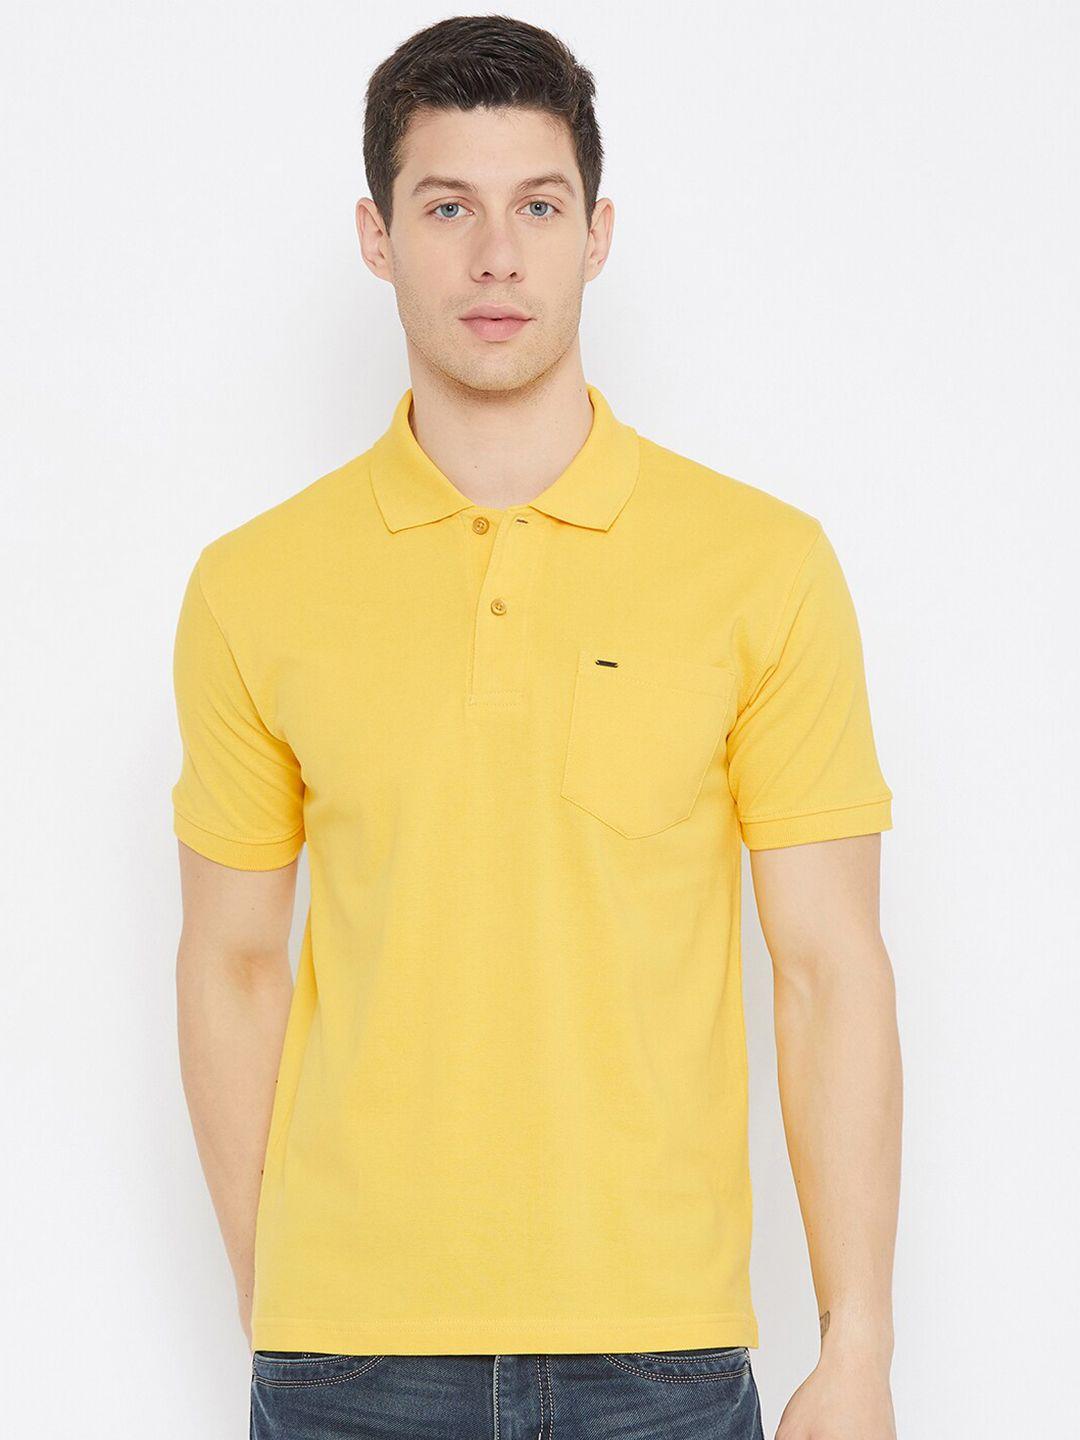 okane-men-yellow-polo-collar-cotton-t-shirt